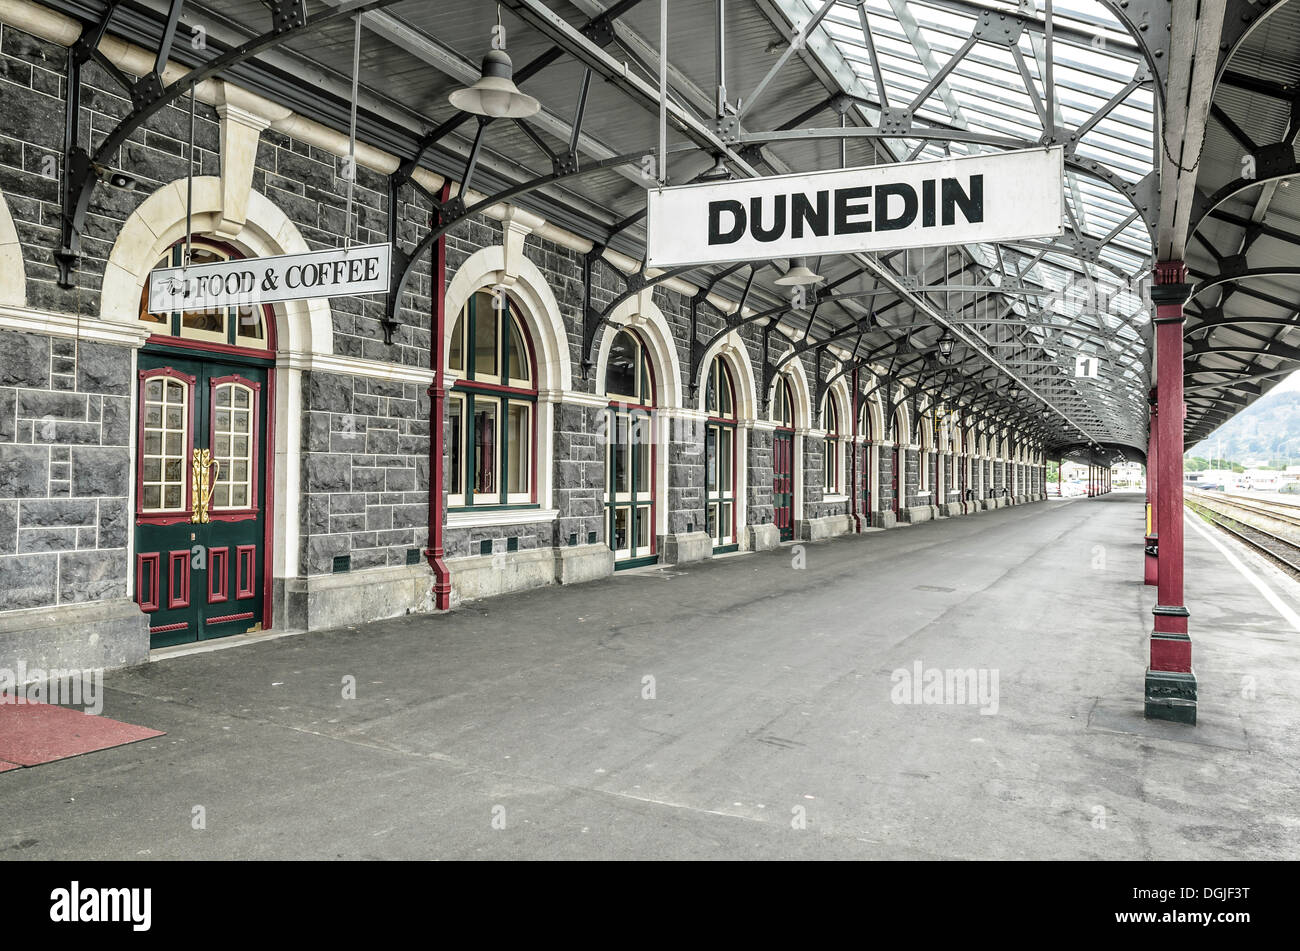 La plate-forme, la gare historique de Dunedin, Dunedin, île du Sud, Nouvelle-Zélande, Océanie Banque D'Images